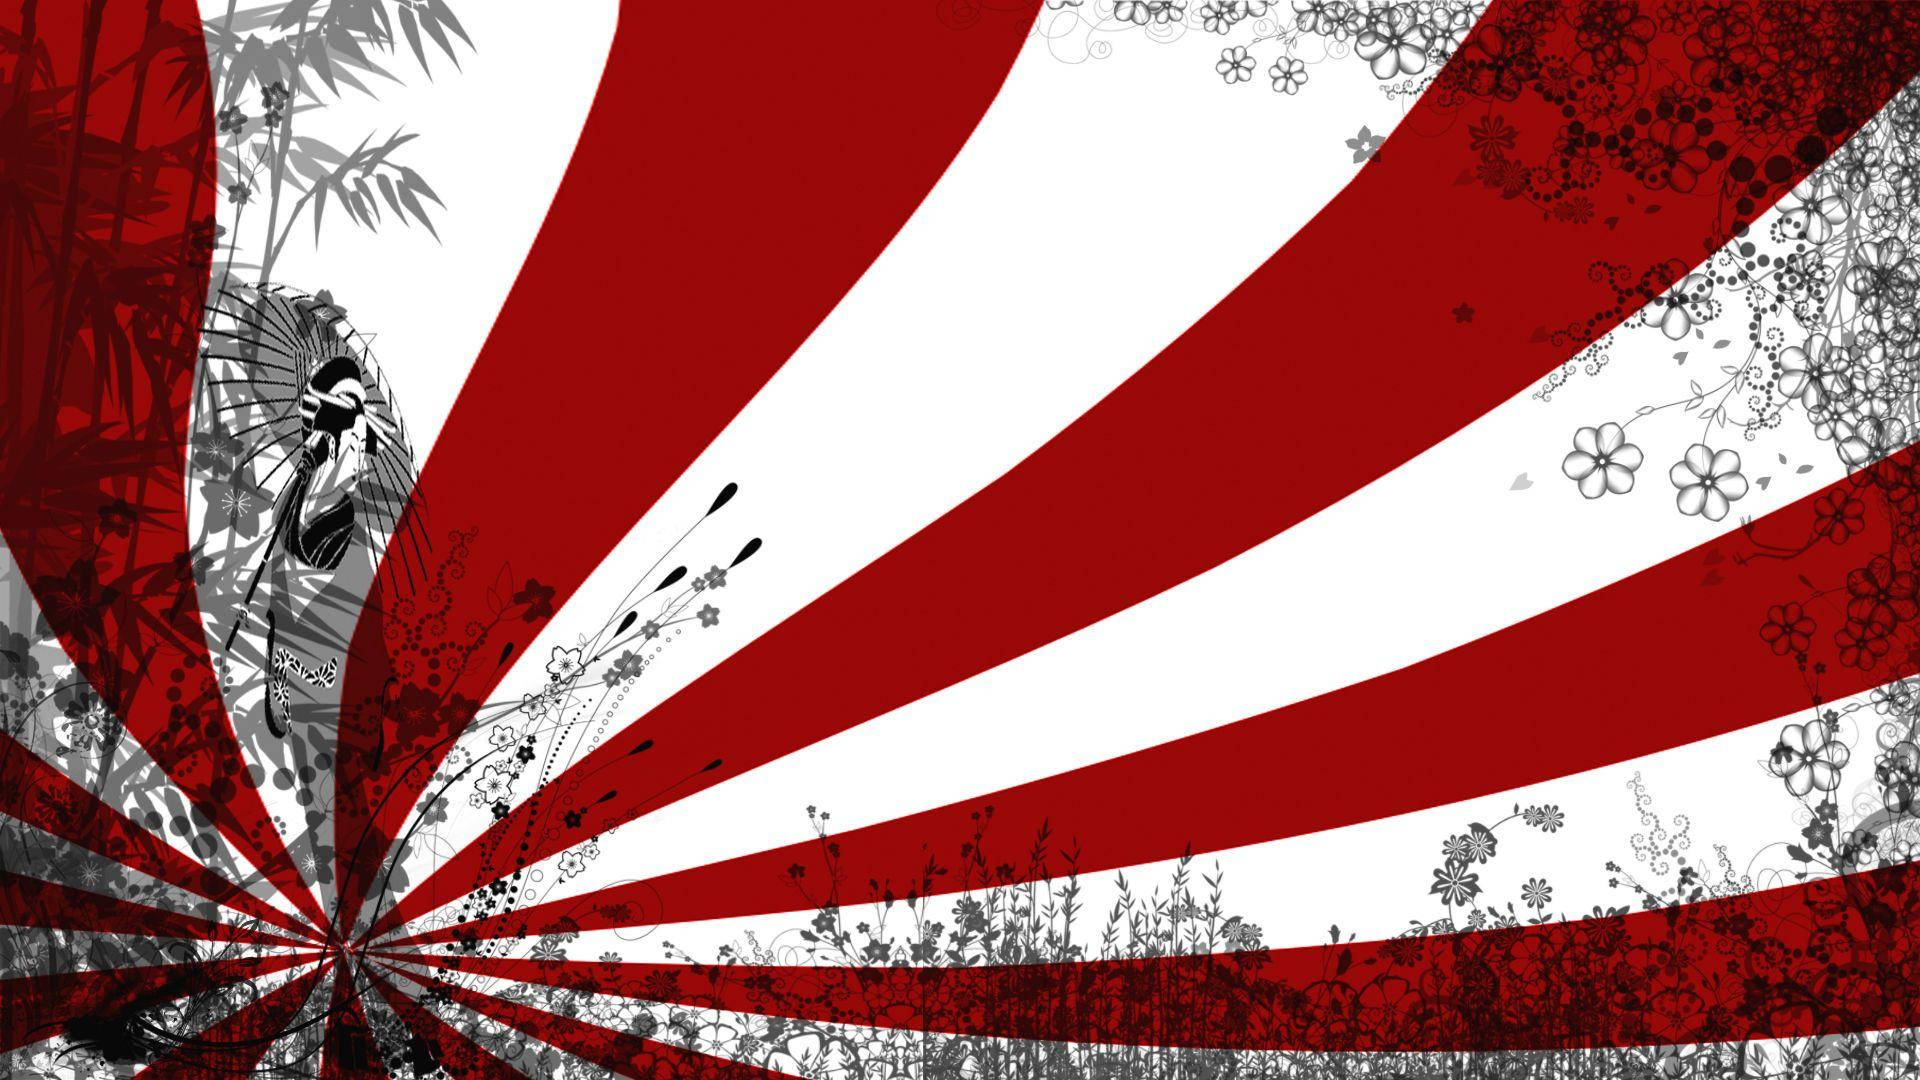 Pôsterartístico Floral Da Bandeira Do Japão. Papel de Parede